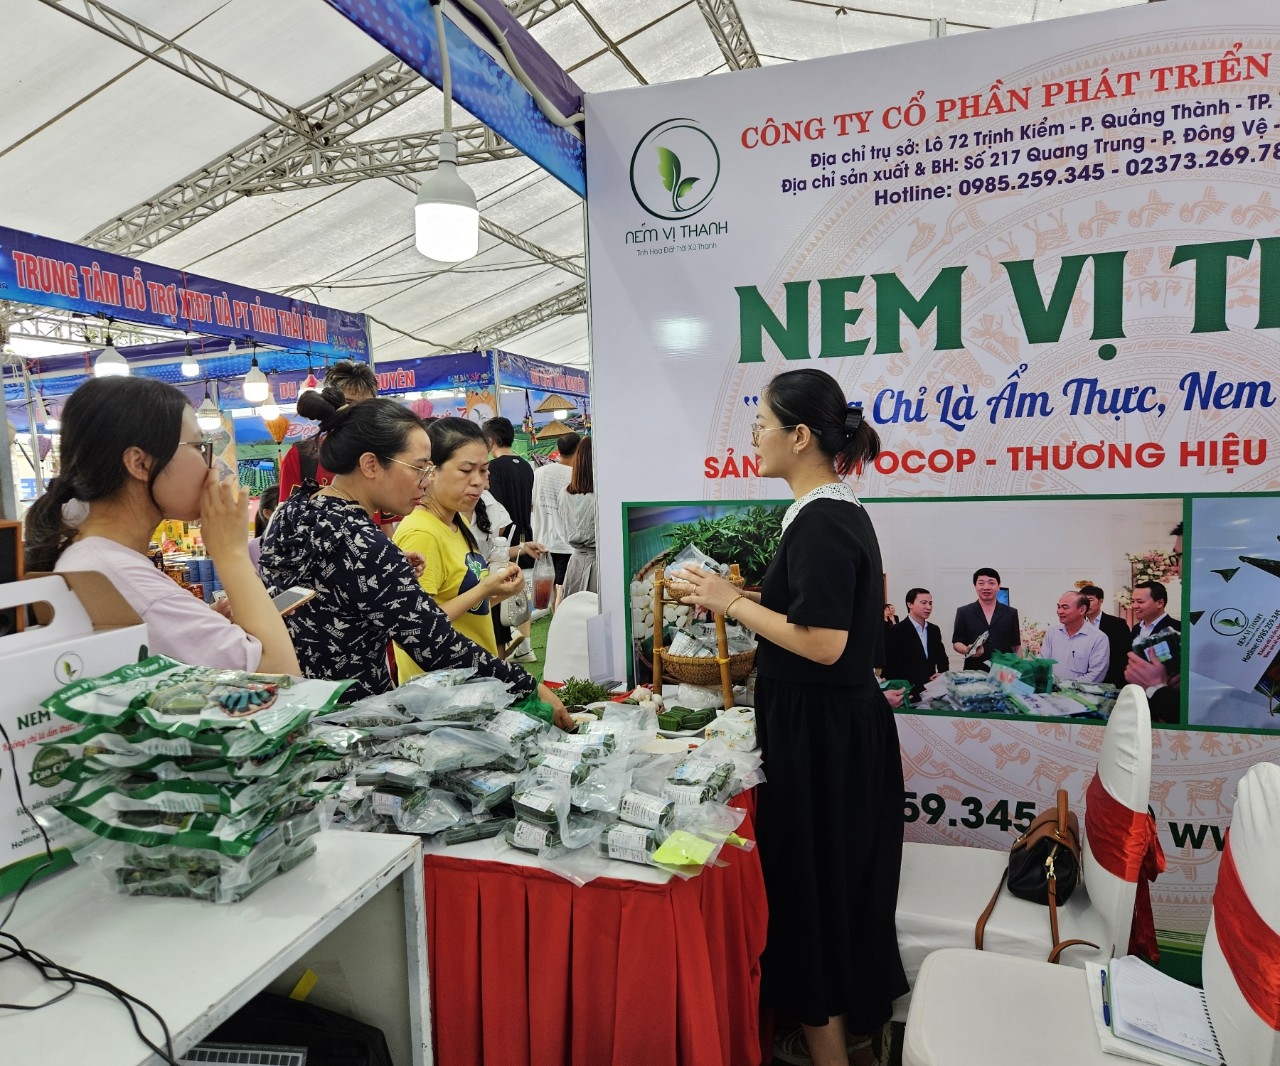 Du khách thỏa sức mua sắm khi có đến với 100 gian hàng đều là các sản phẩm OCOP nổi tiếng xứ Thanh